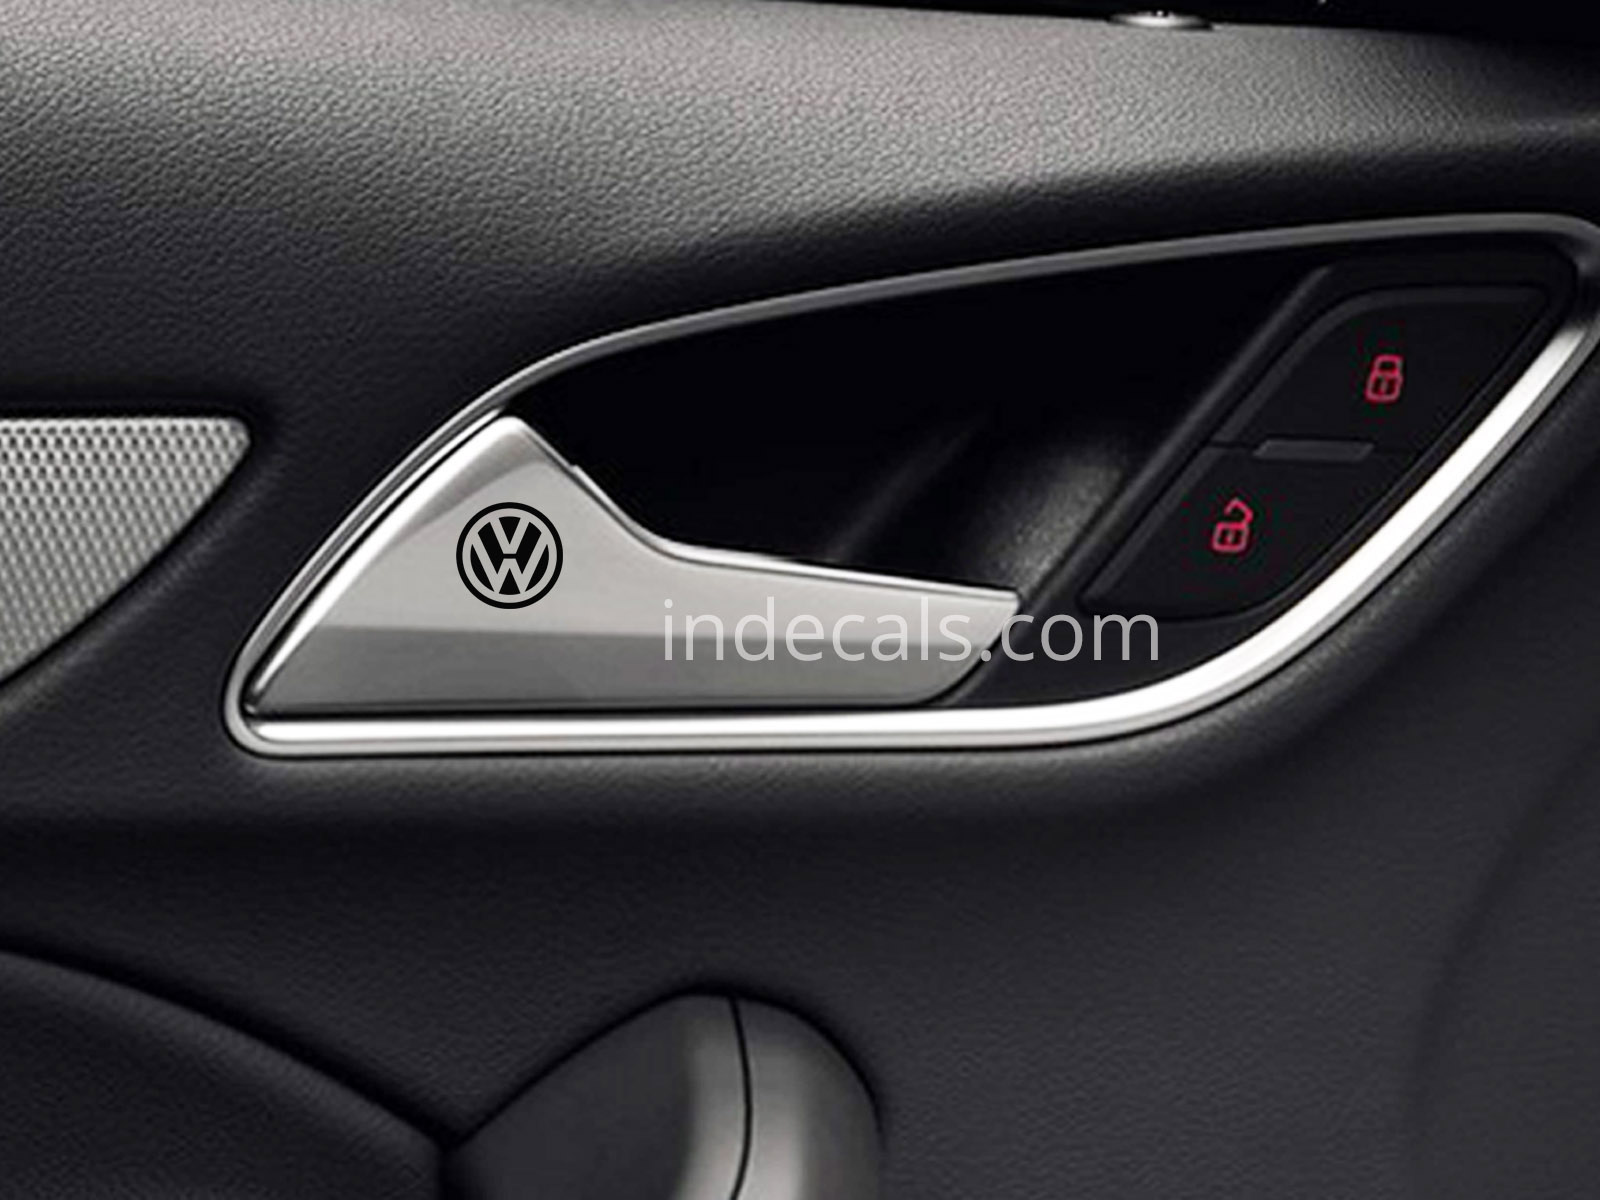 6 x Volkswagen Stickers for Door Handles - Black 